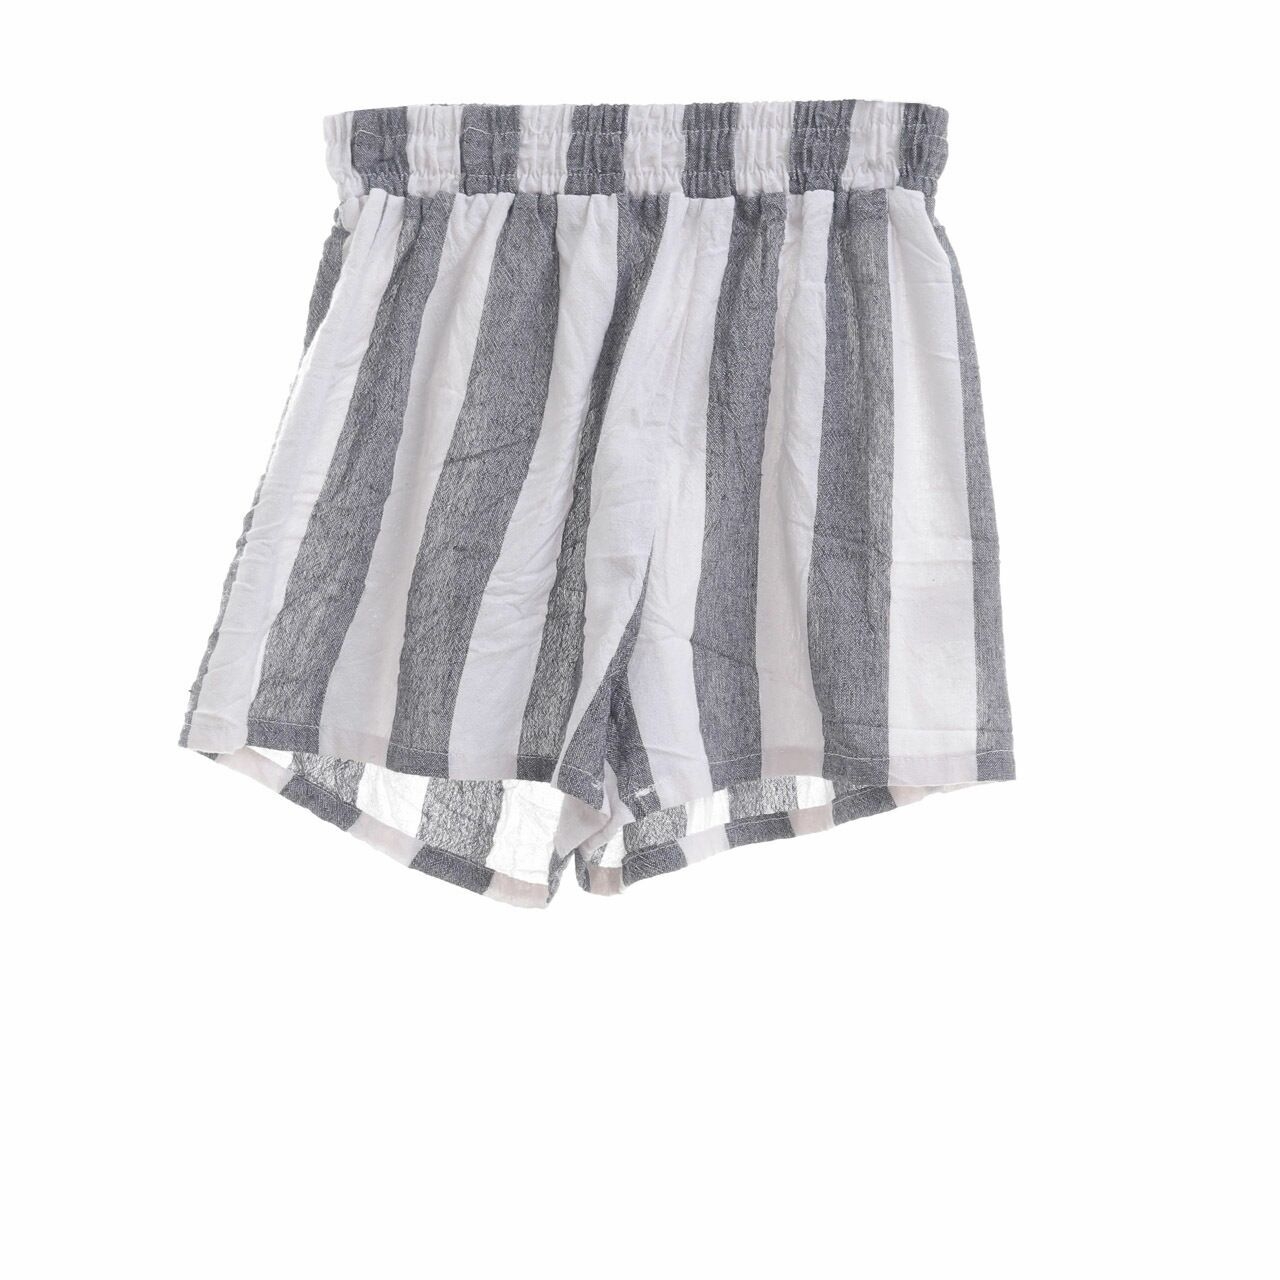 Prettylittlething Grey Stripes Short Pants